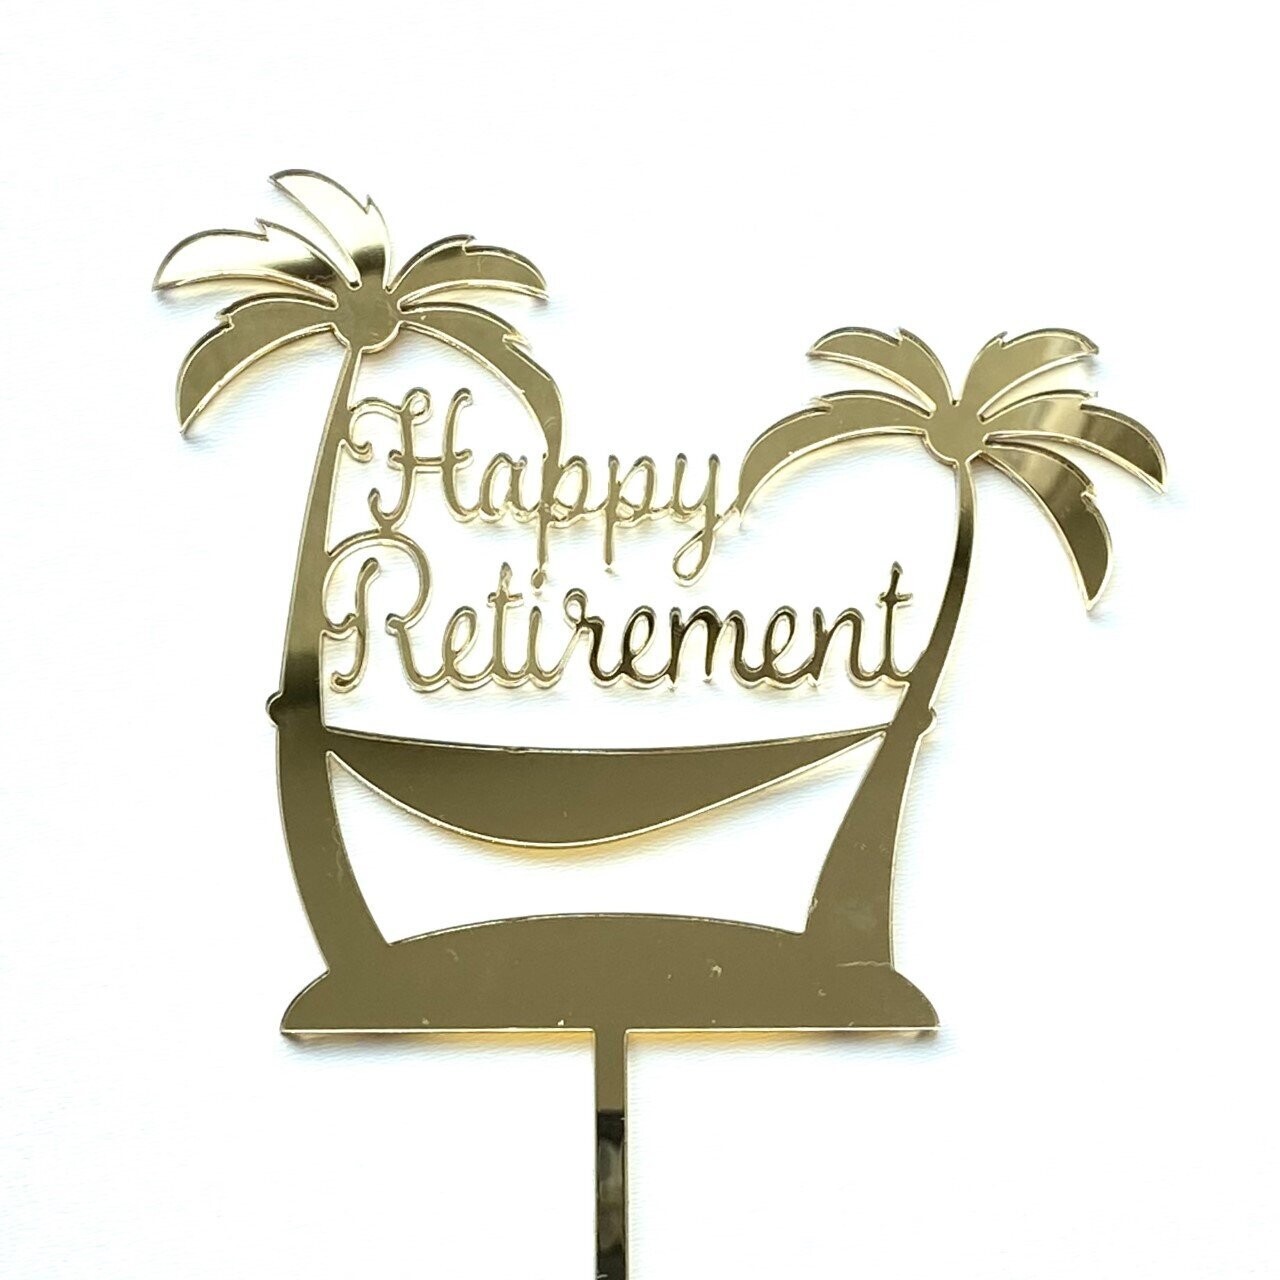 Pensioen retirement taart topper